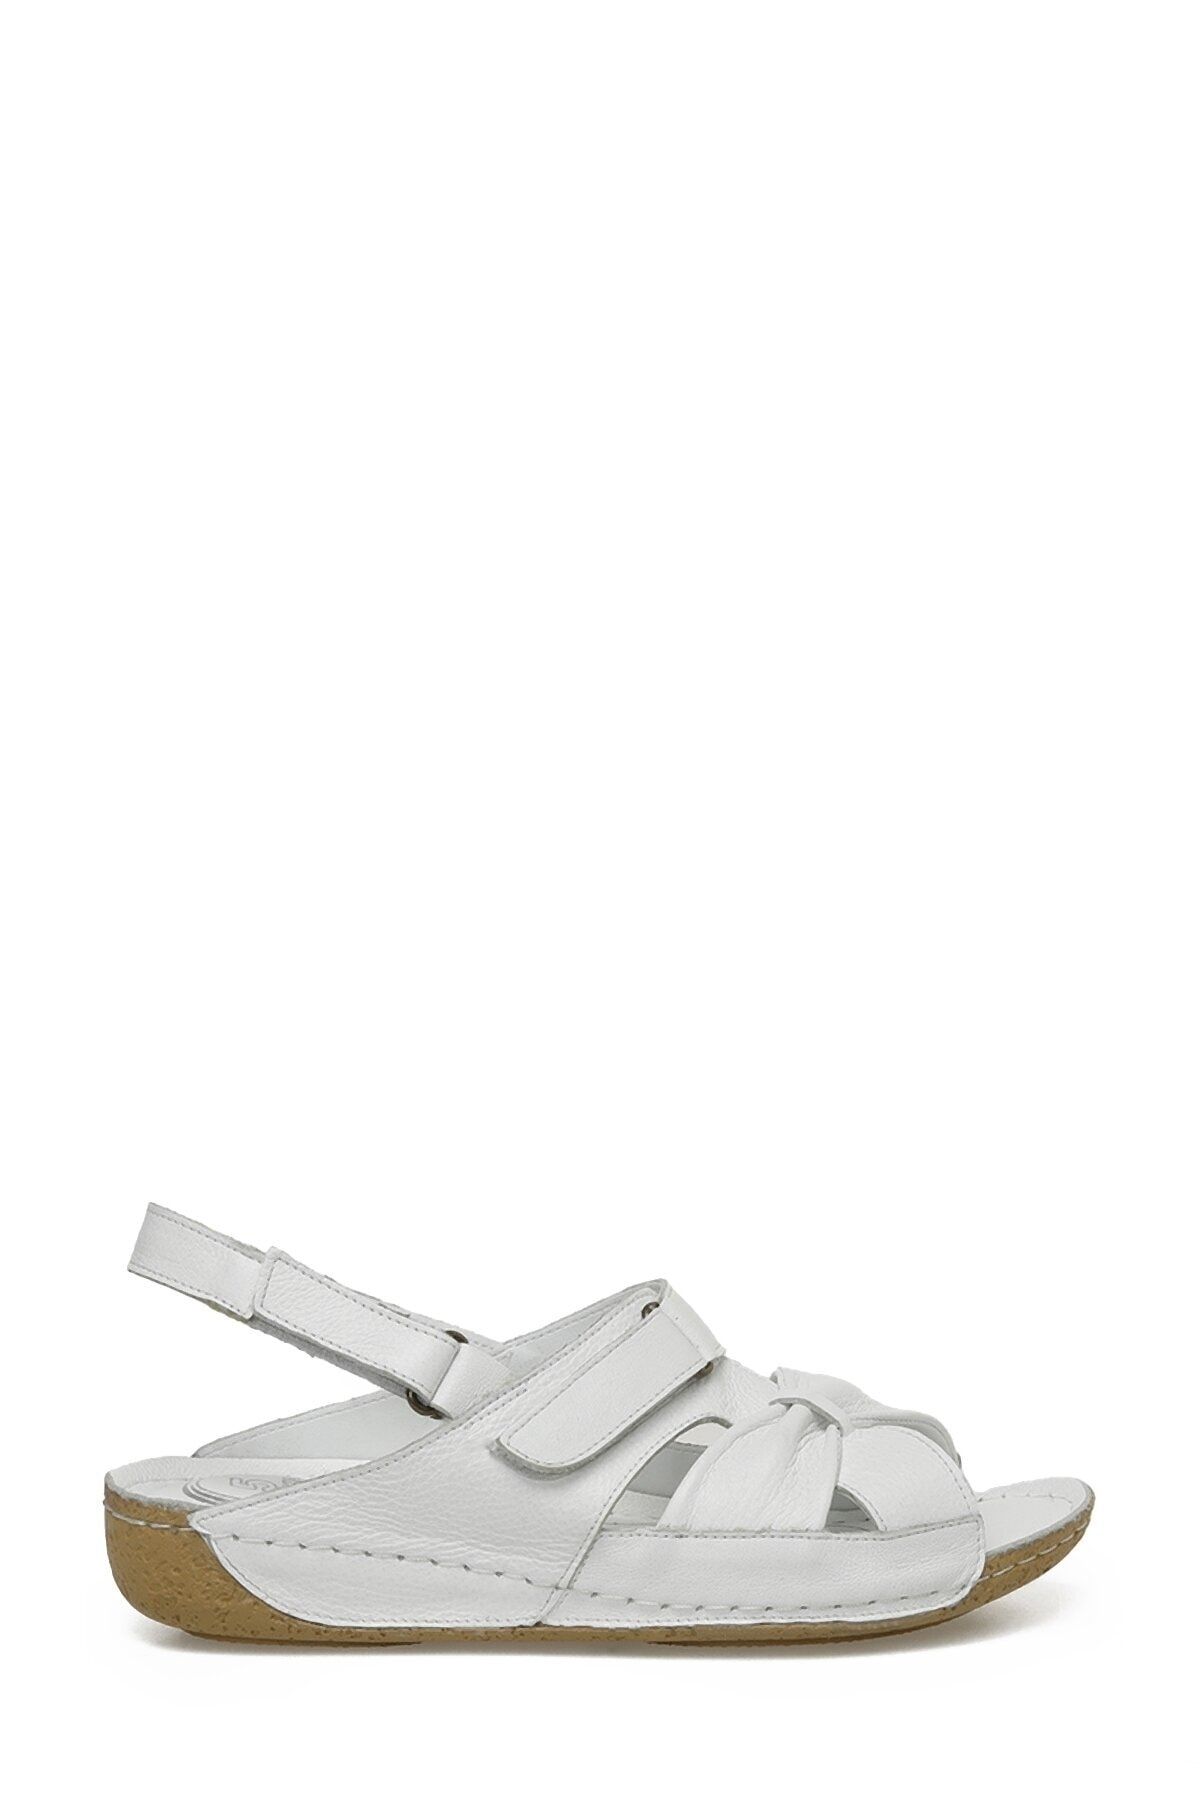 Polaris 104403.z3fx Beyaz Kadın Comfort Sandalet